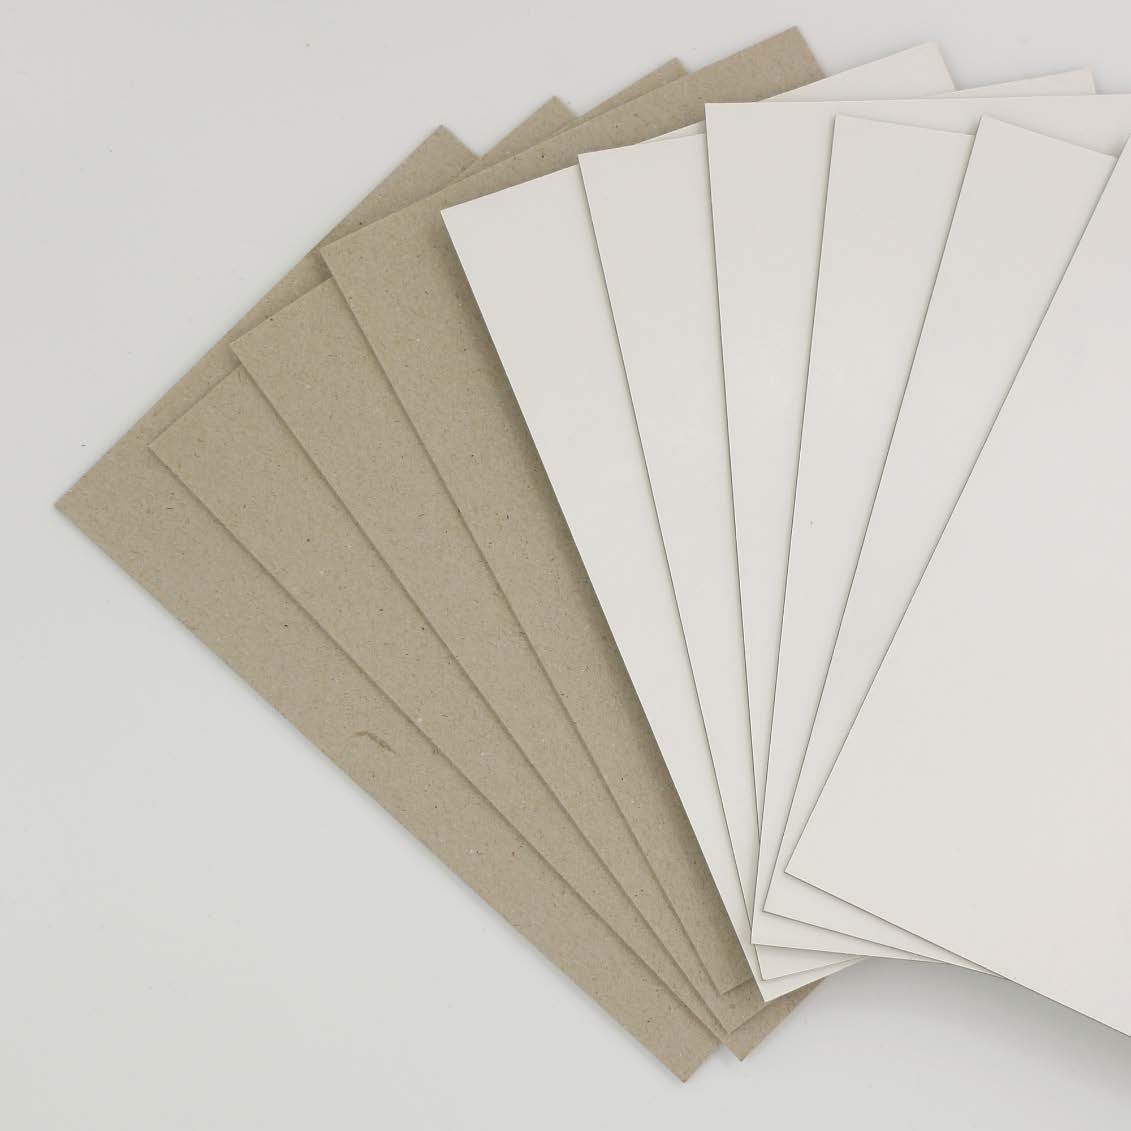 Paquet de 5 feuilles de carton 1 côté blanc, 1 côté gris format 50 x 65 cm,  640 gr